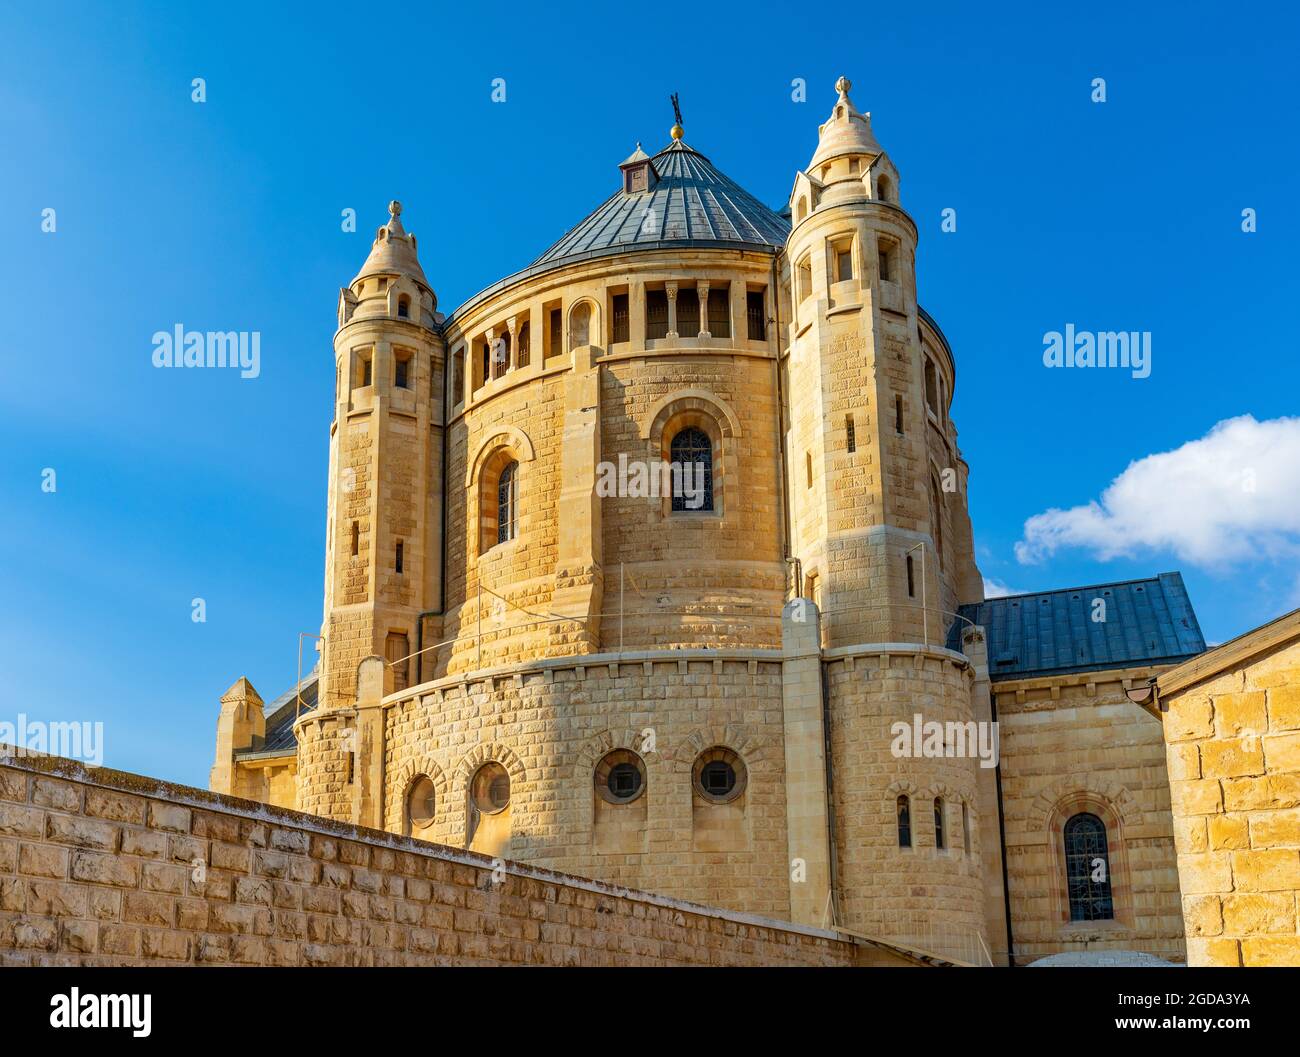 Jerusalén, Israel - 13 de octubre de 2017: Abadía Benedictina de Dormición en el Monte Zion, cerca de la Puerta de Zion fuera de las murallas de la Ciudad Vieja de Jerusalén Foto de stock